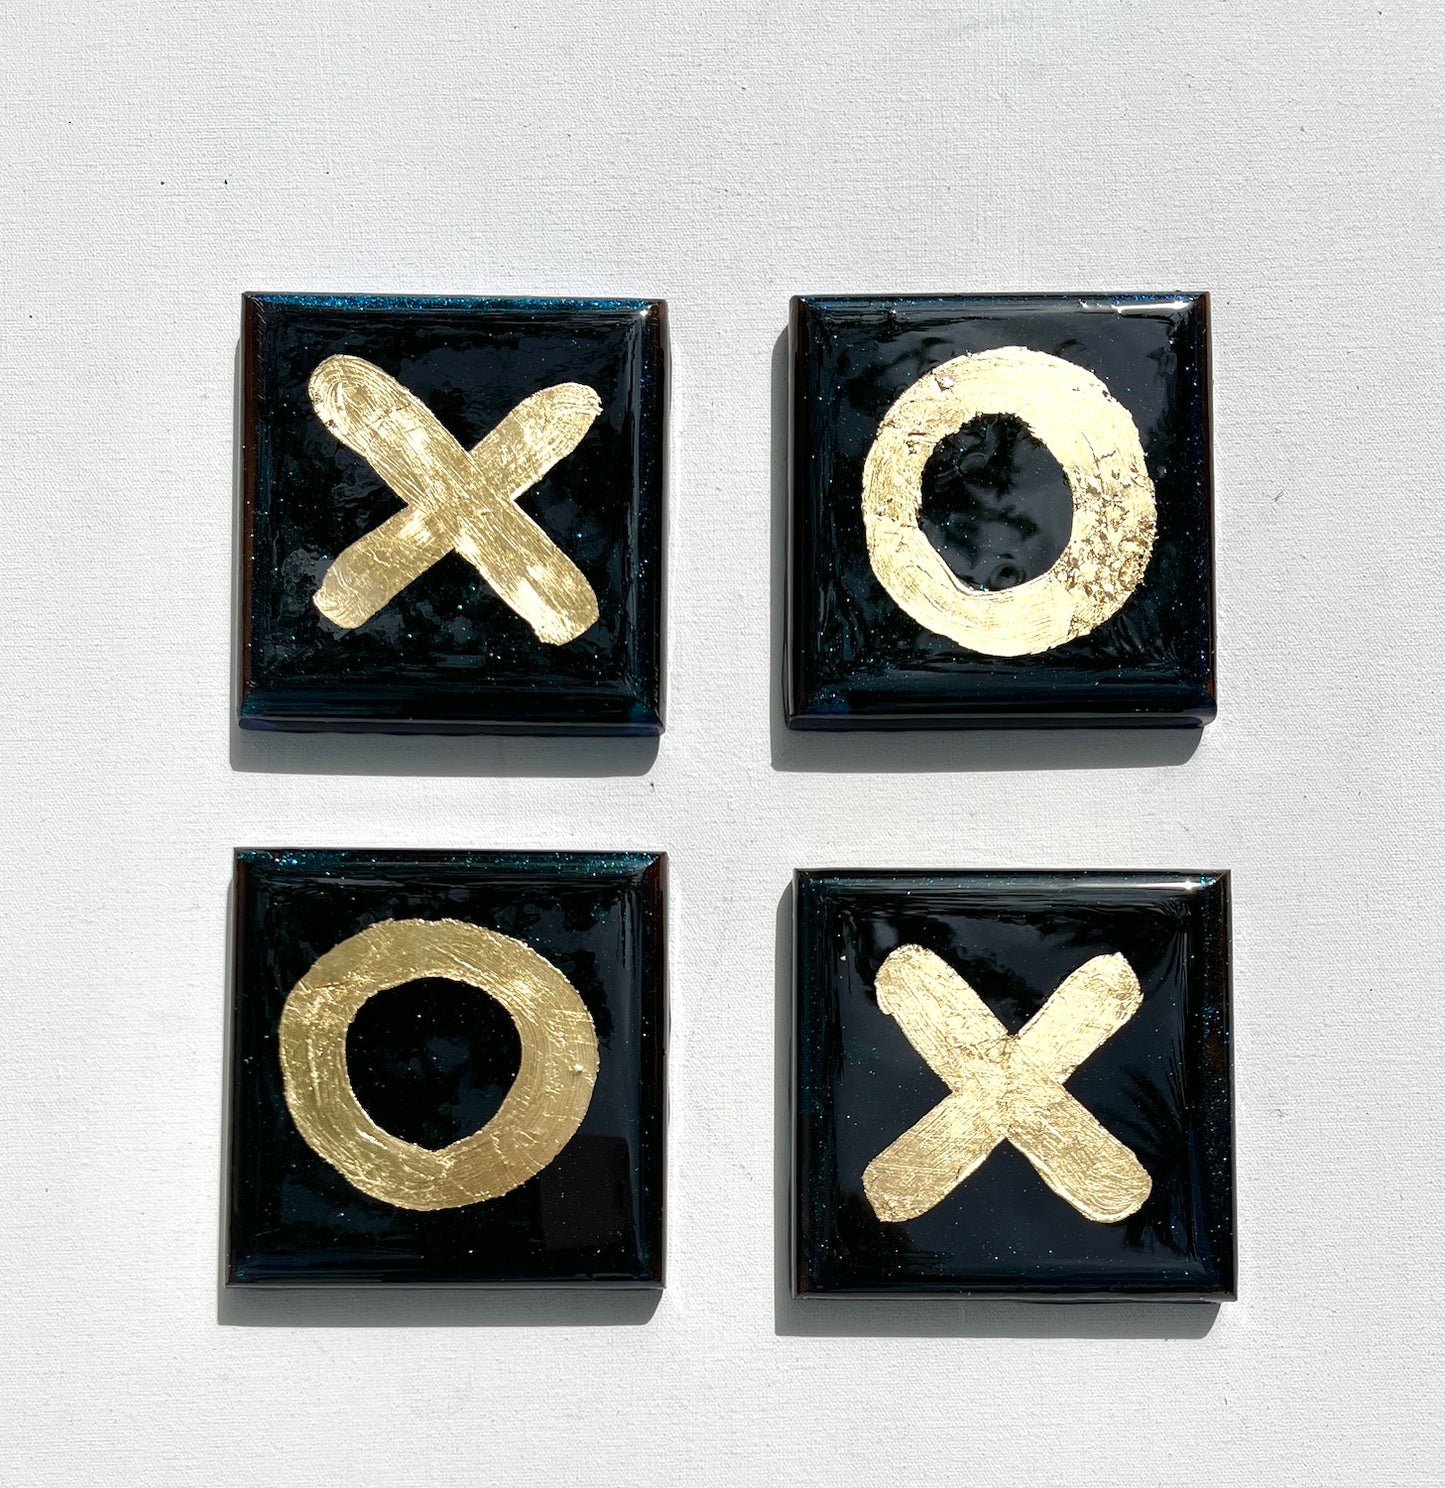 XOXO - Coasters.